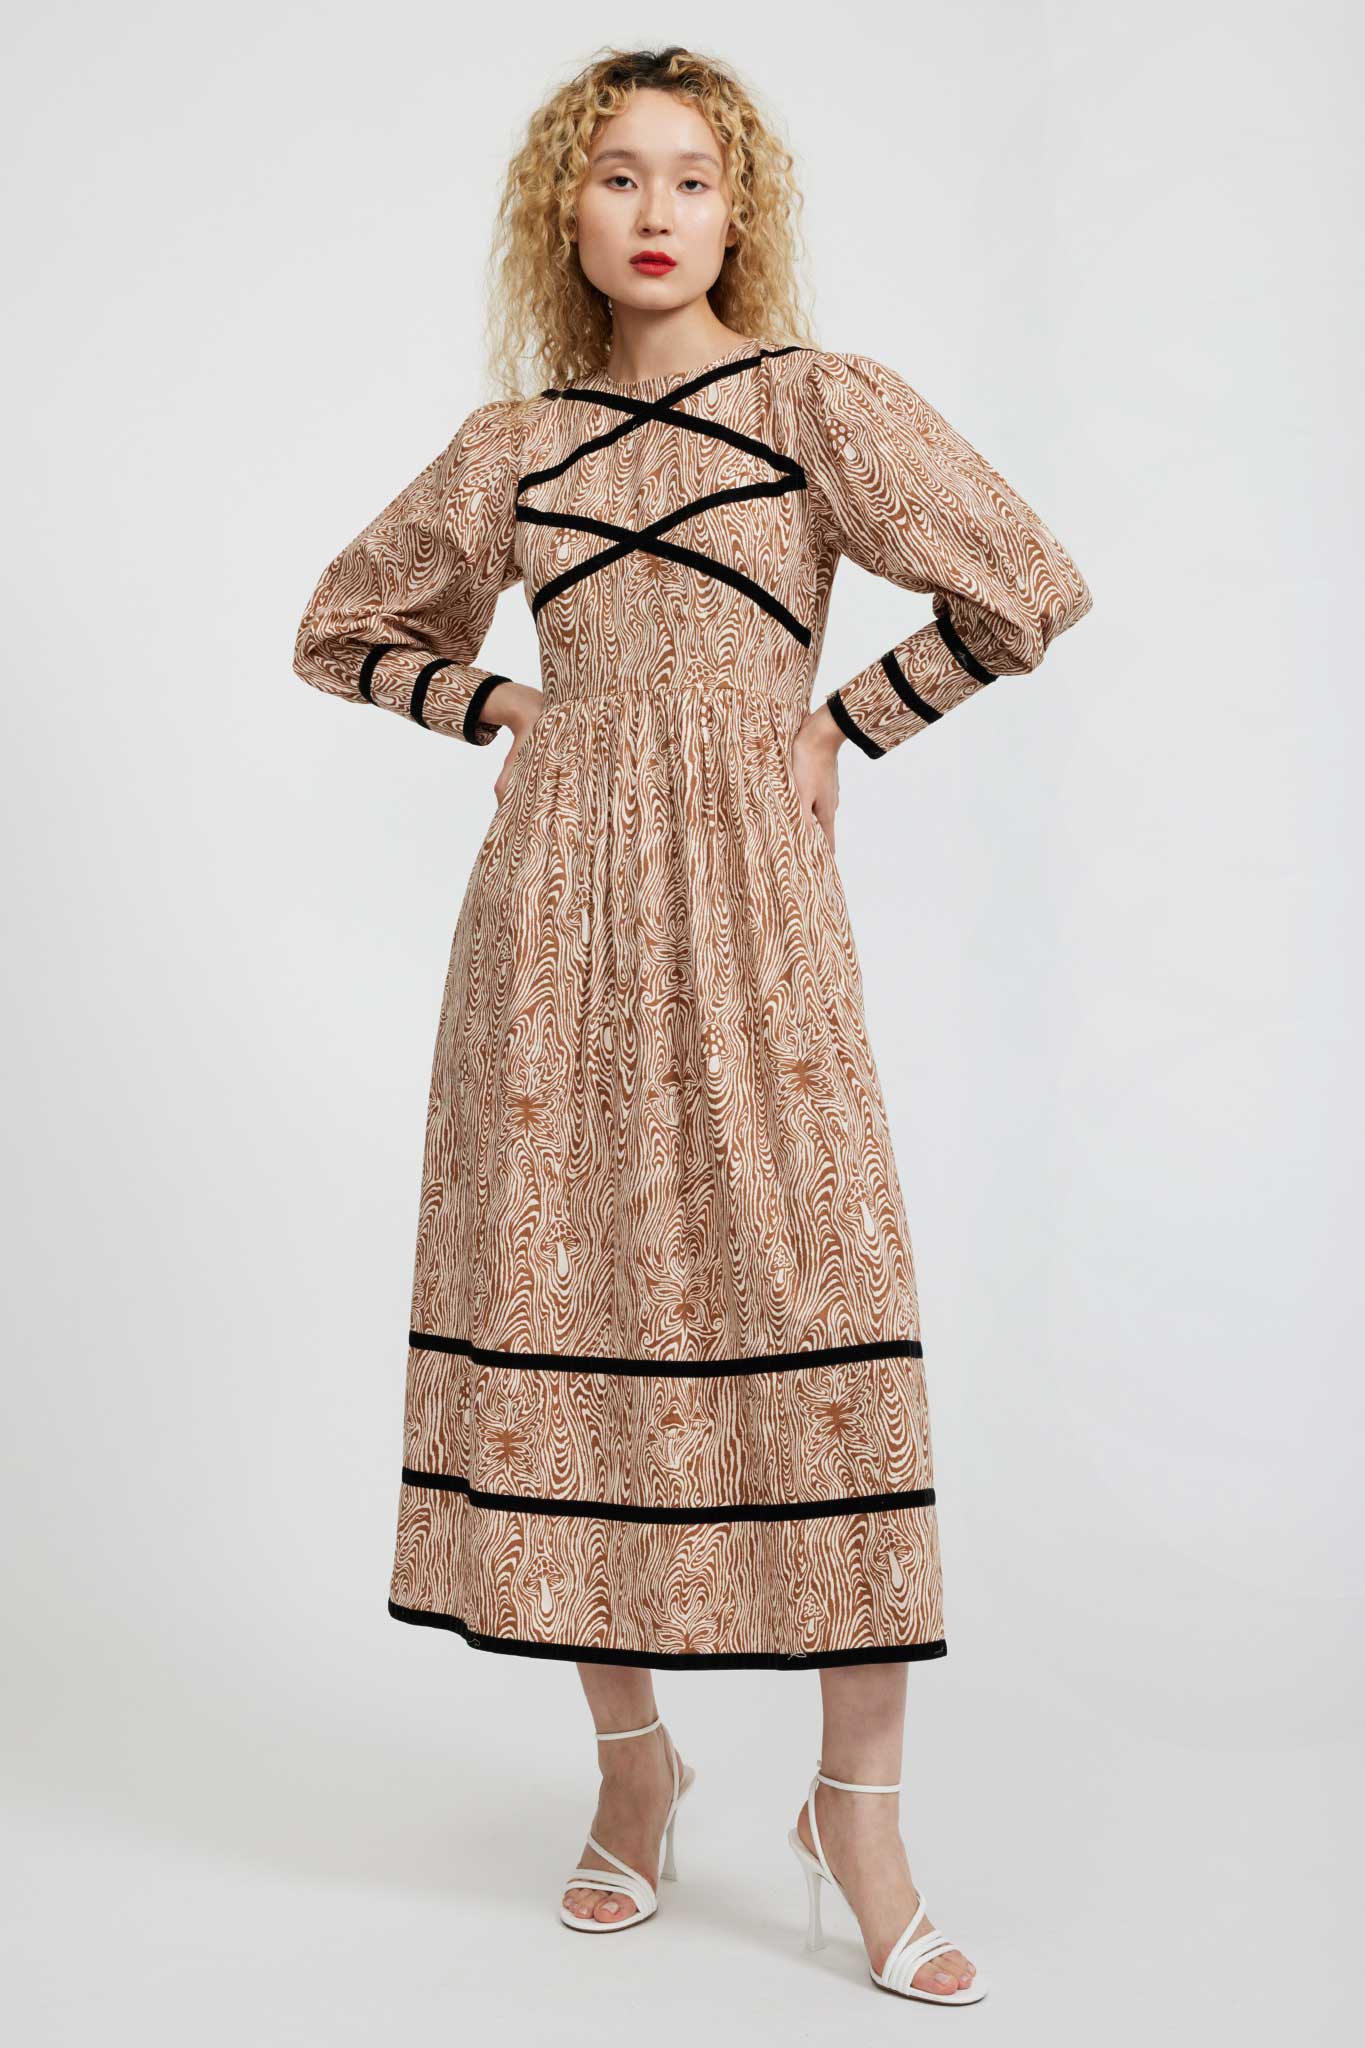 Clemmie Dress in Woodgrain Fantasy by Batsheva